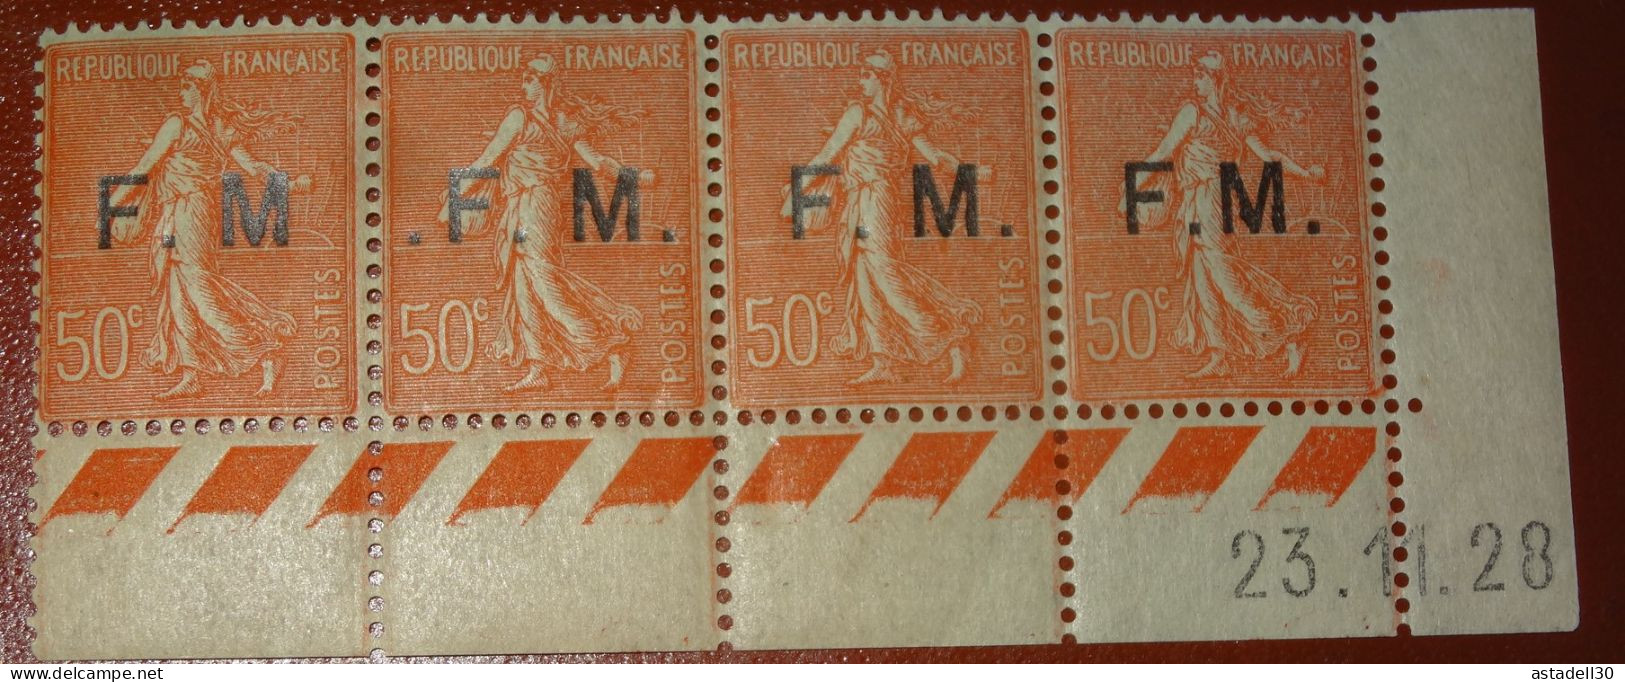 Superbe Variéte Sur Franchise Militaire , N°6, Semeuse 50c, Neufs Sans Charniere ** - Coin Daté 1928   ..... CL1-19-1 - Unused Stamps